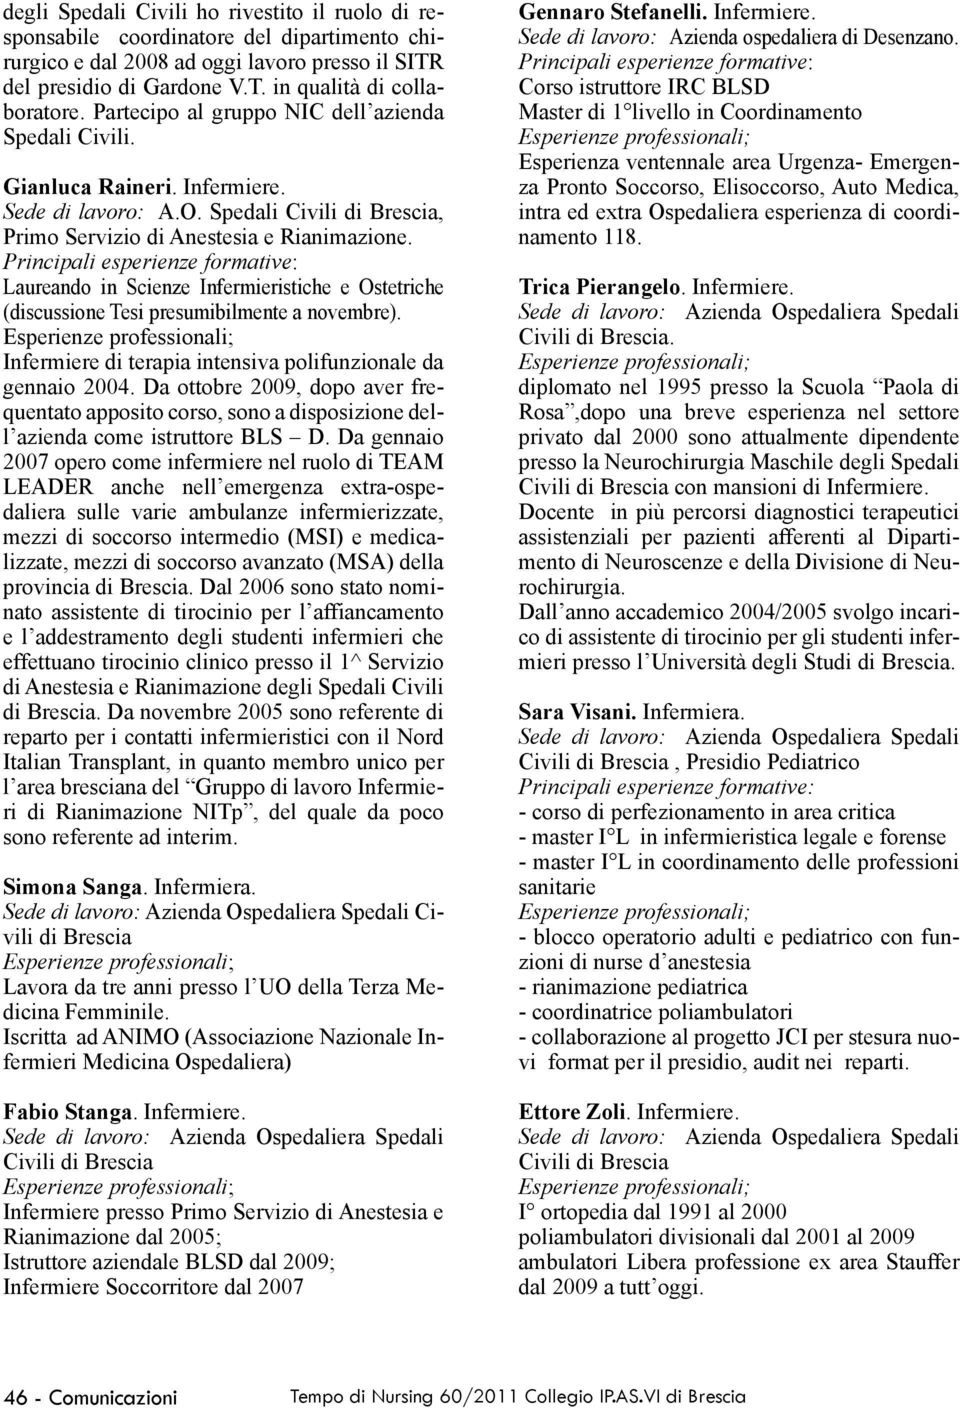 Laureando in Scienze Infermieristiche e Ostetriche (discussione Tesi presumibilmente a novembre). Infermiere di terapia intensiva polifunzionale da gennaio 2004.